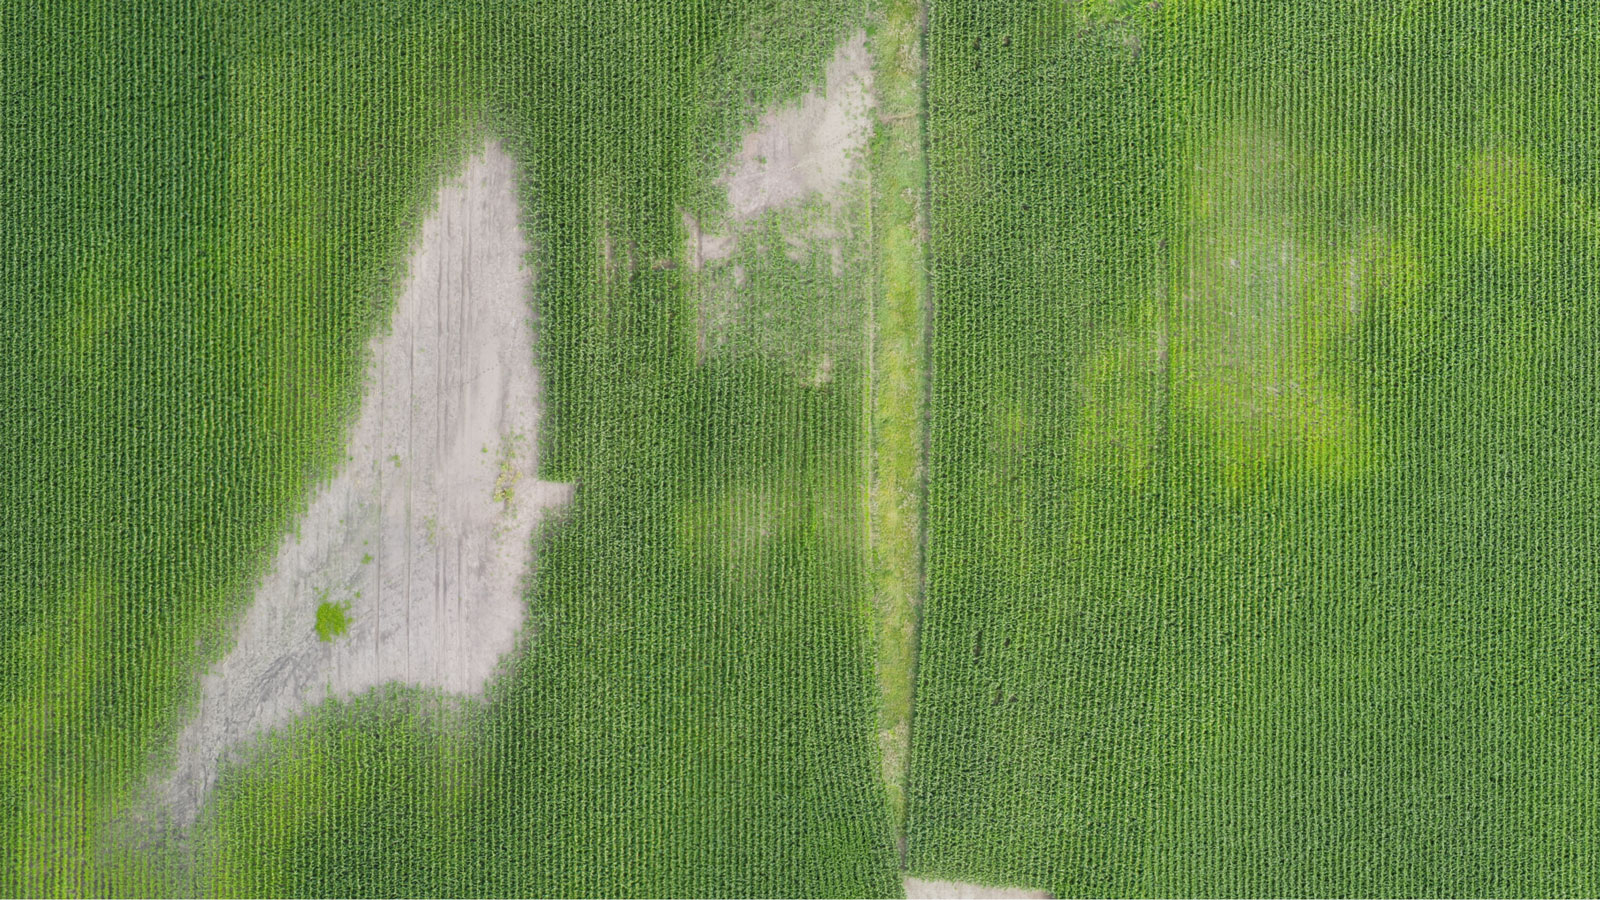 Saída de ortomosaico para mapeamento agrícola usando drone agrícola